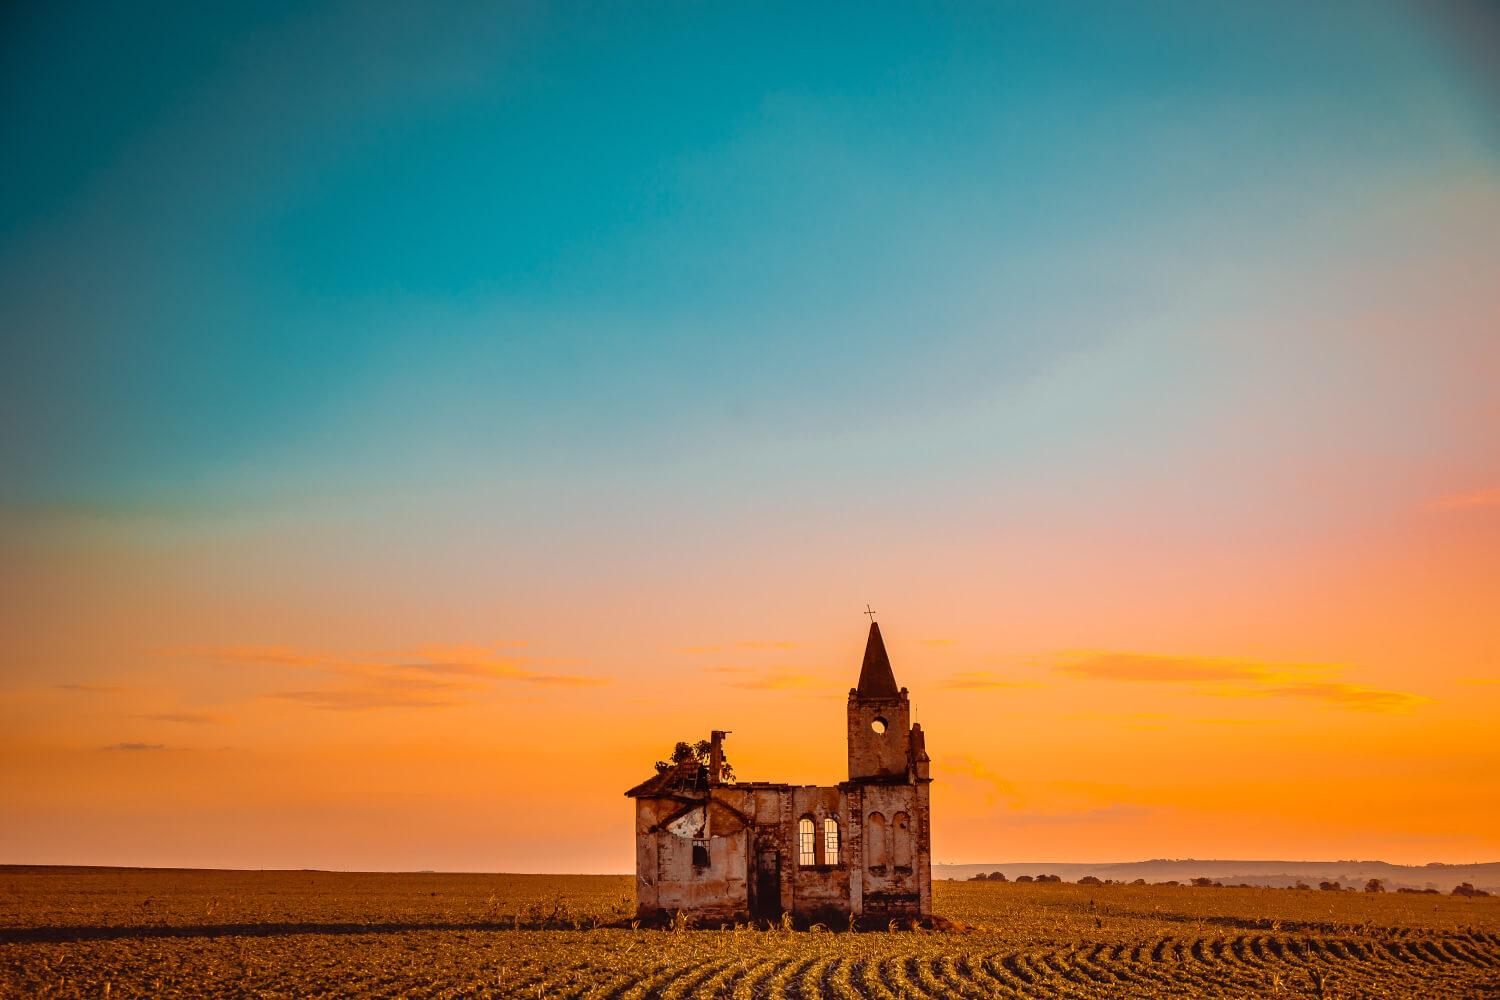 The Ruins of a Rural Church